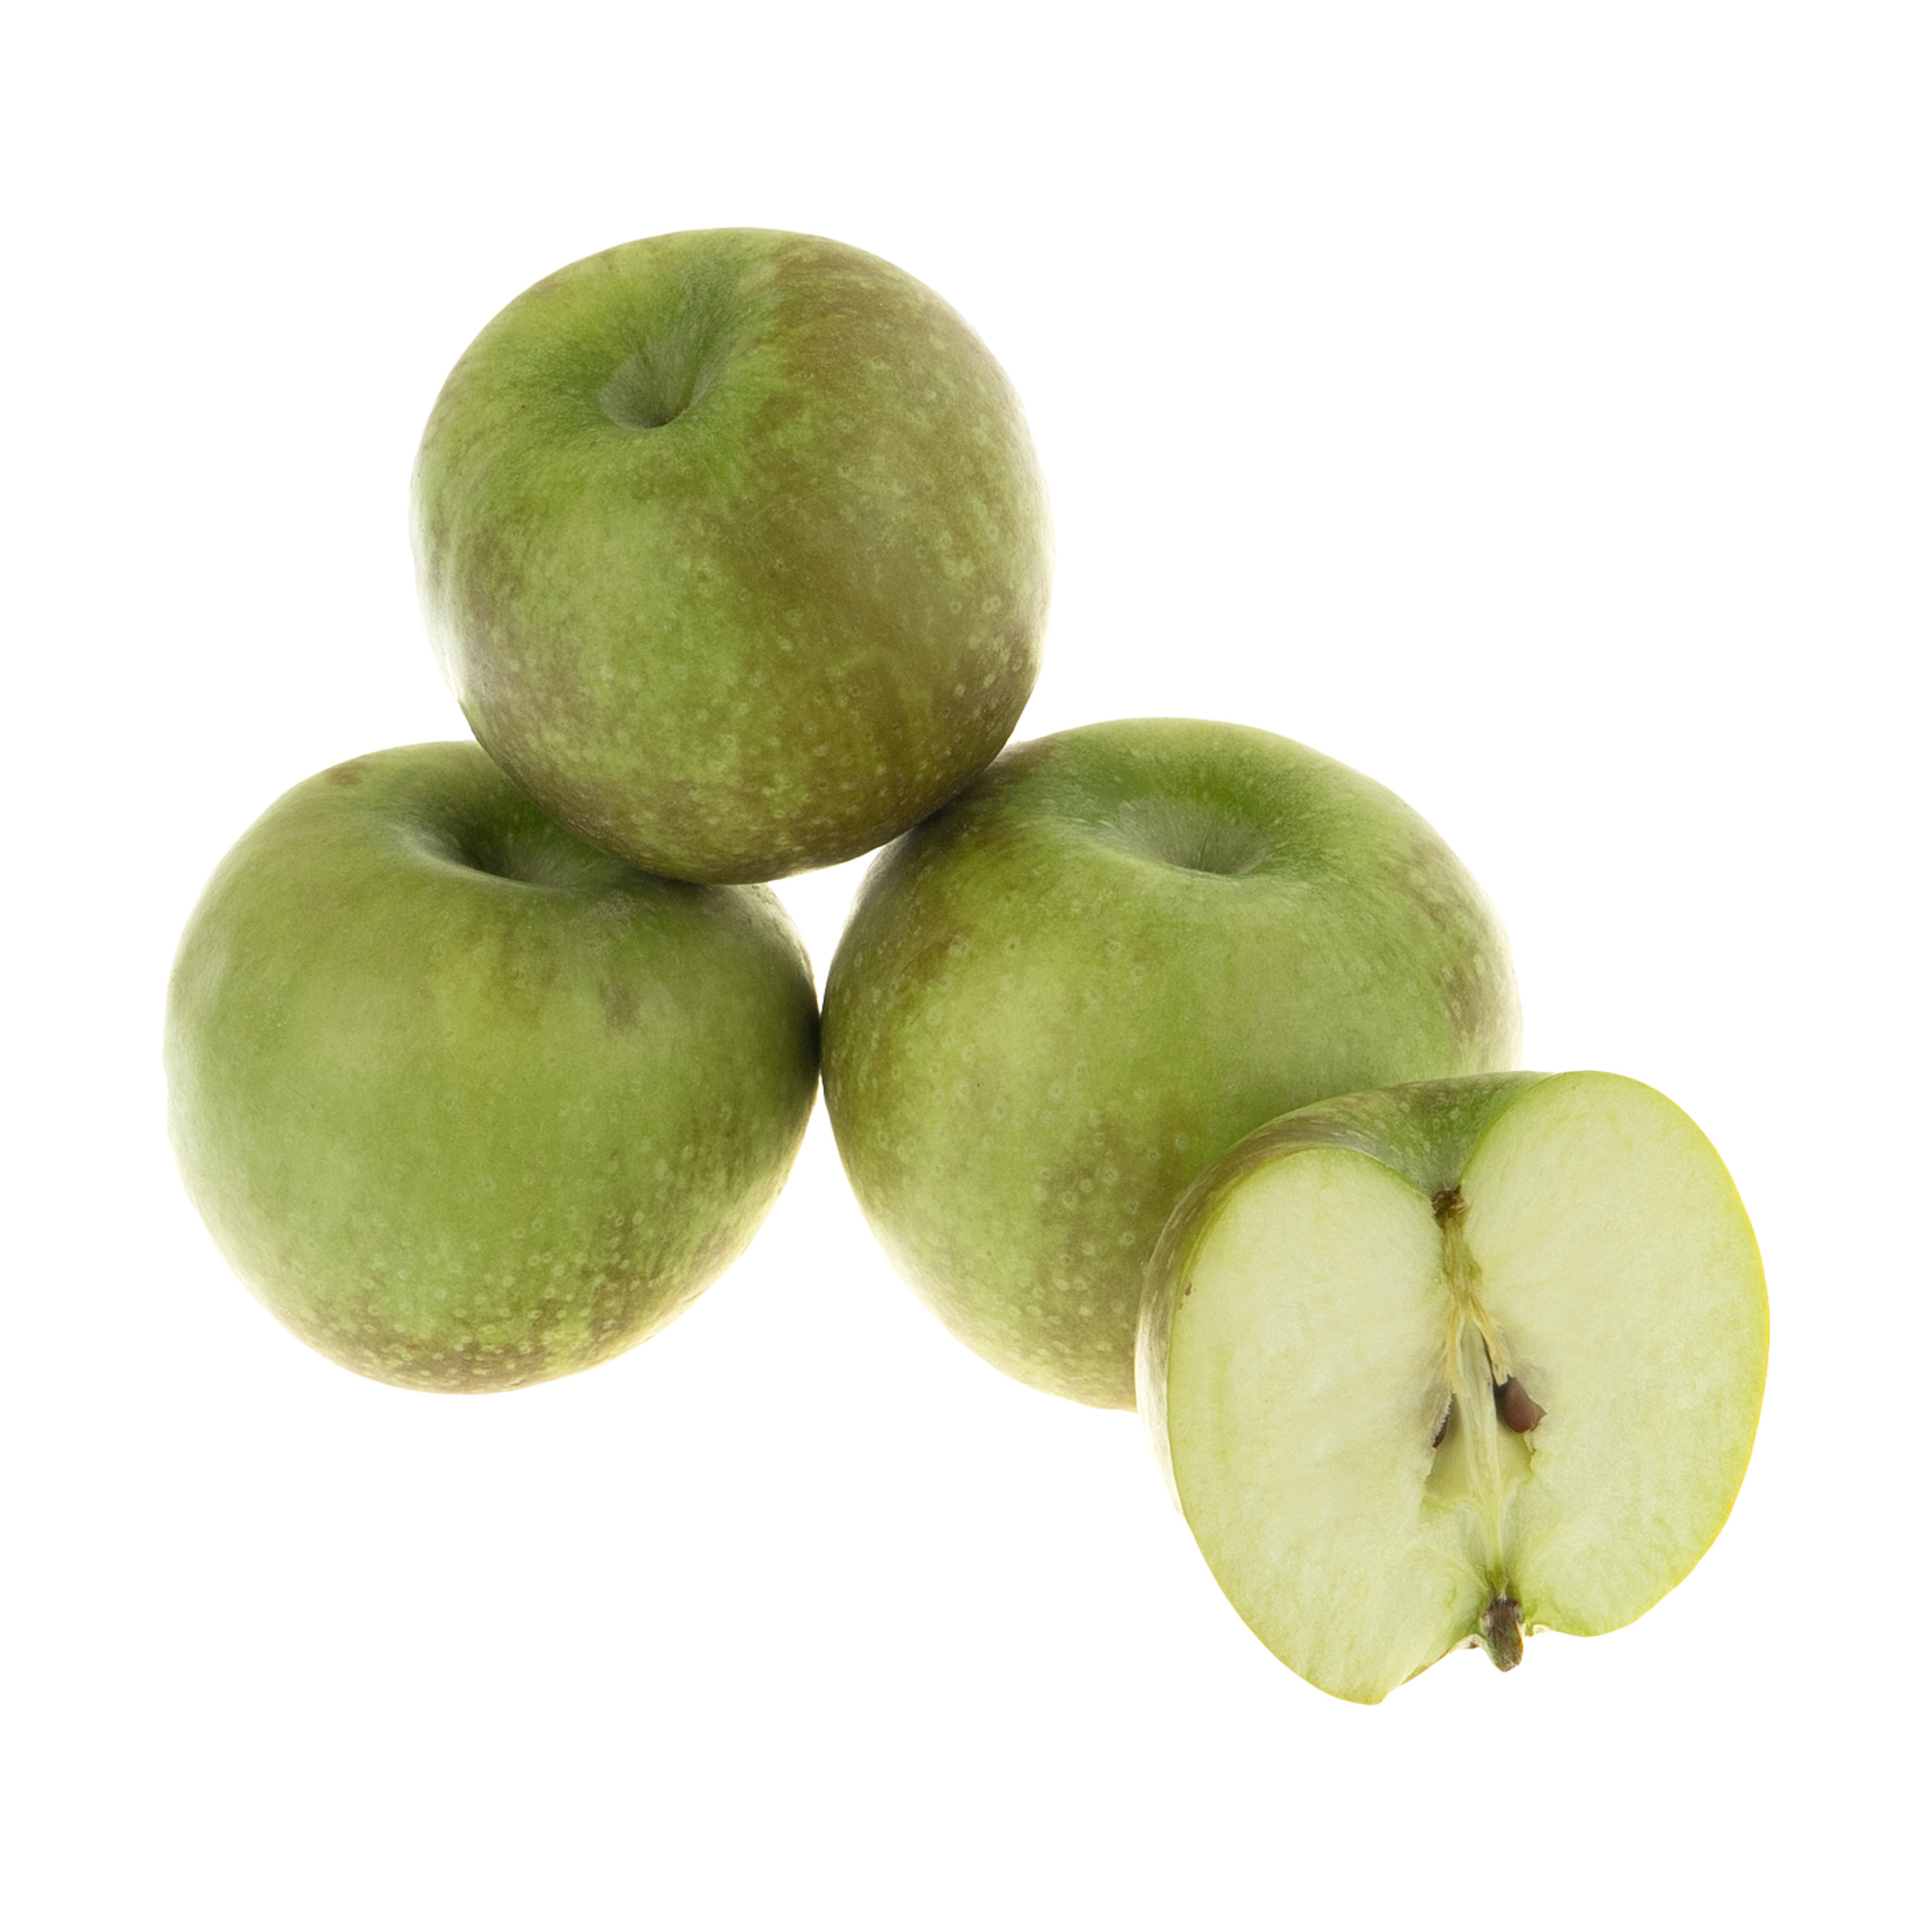 سیب سبز درجه 1 بلوط - 1 کیلوگرم